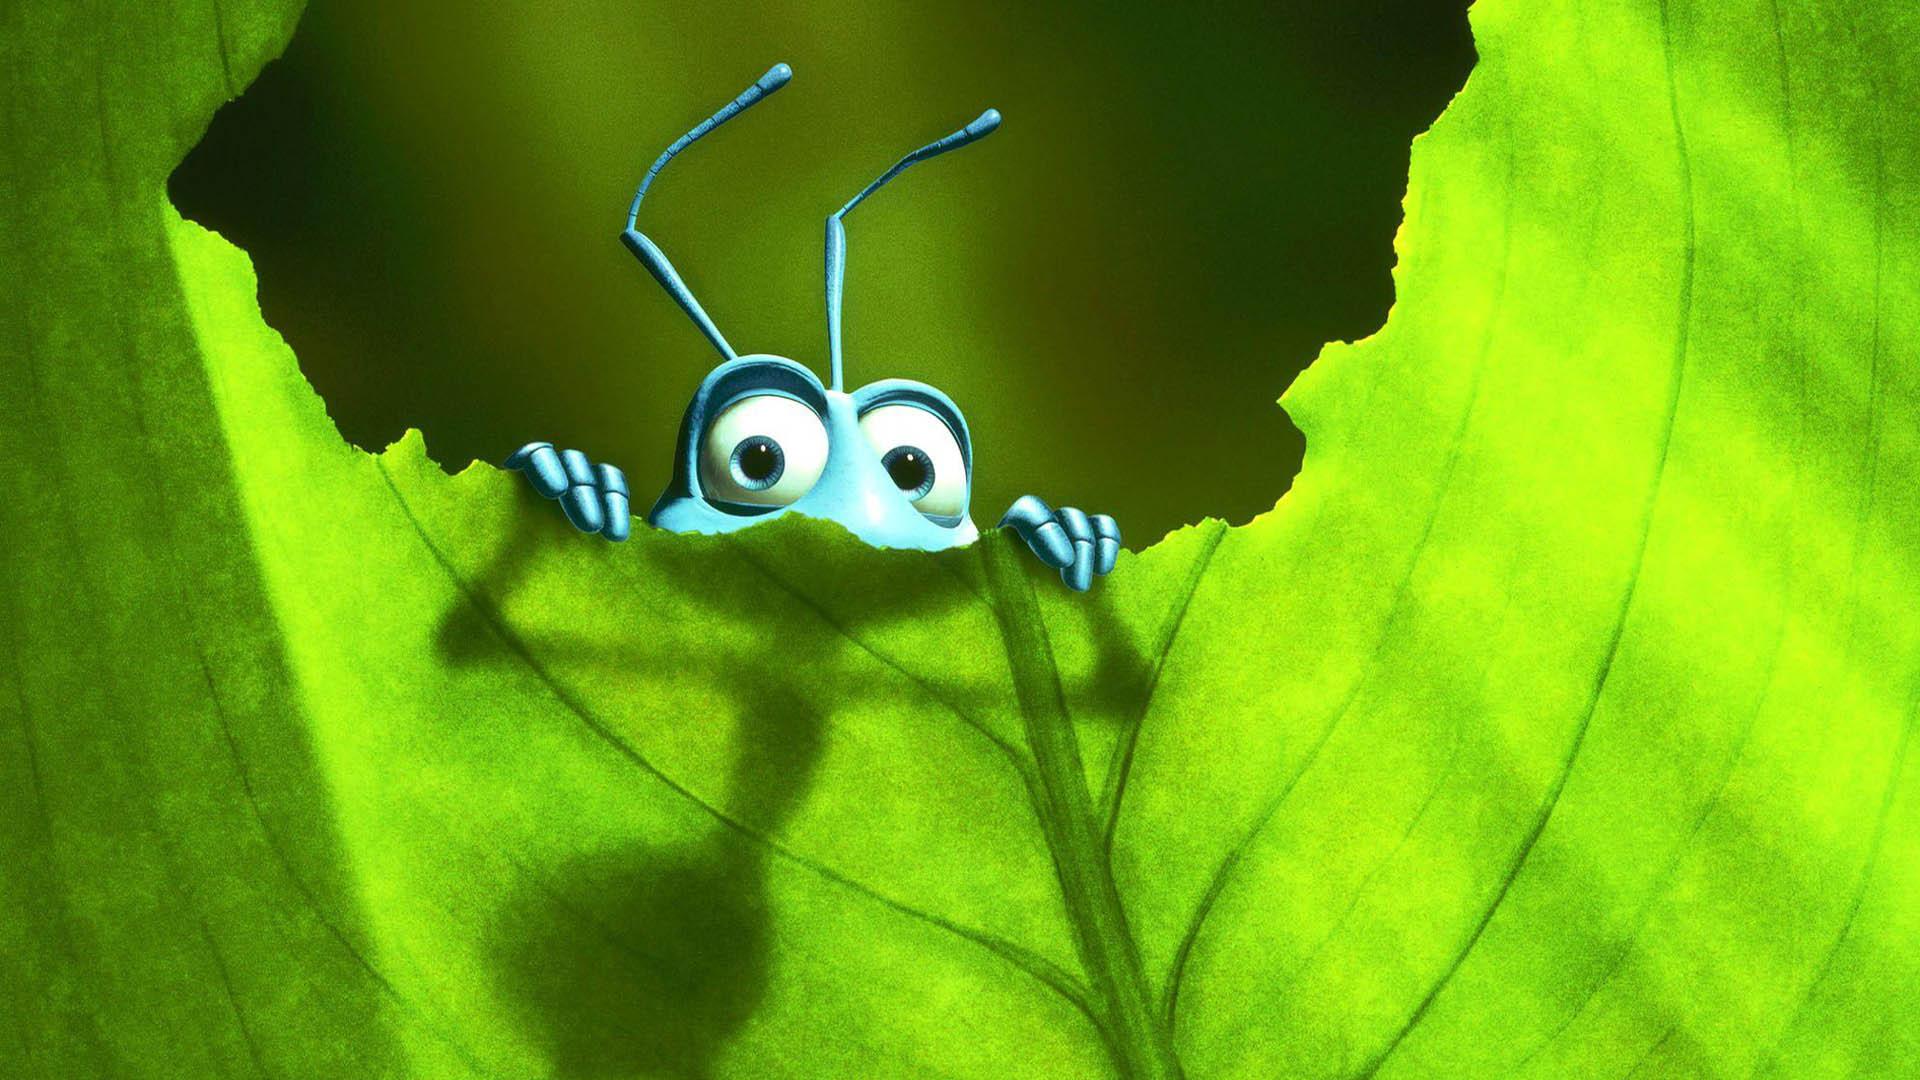 شخصیت فلیک پنهان شده در پشت یک برگ در انیمیشن a bug